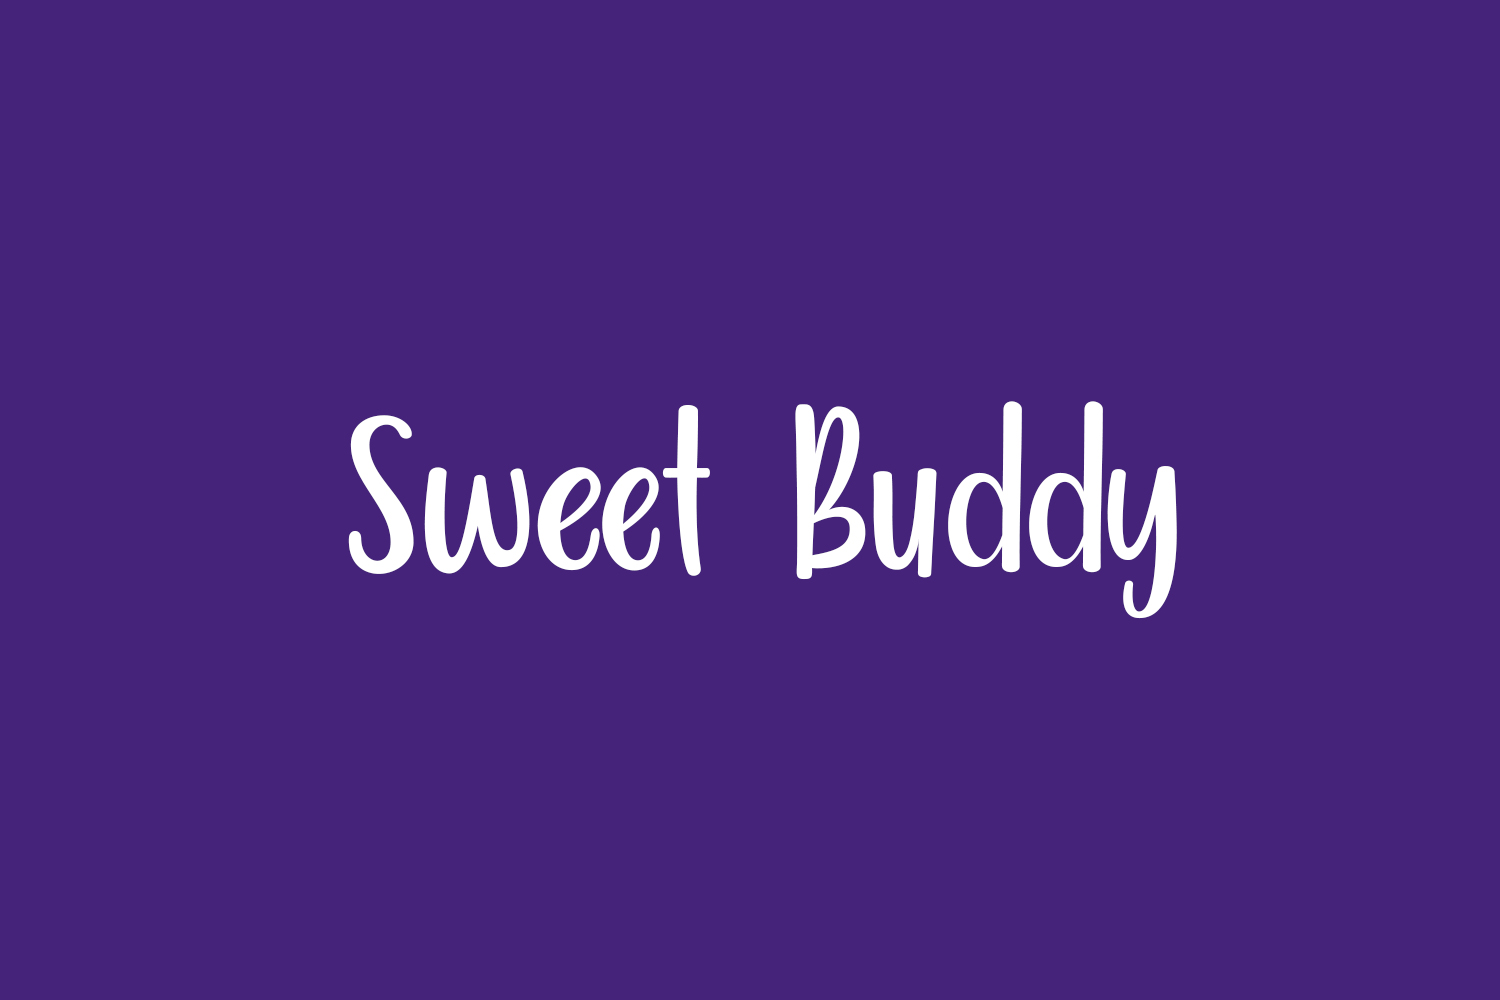 Sweet Buddy Free Font